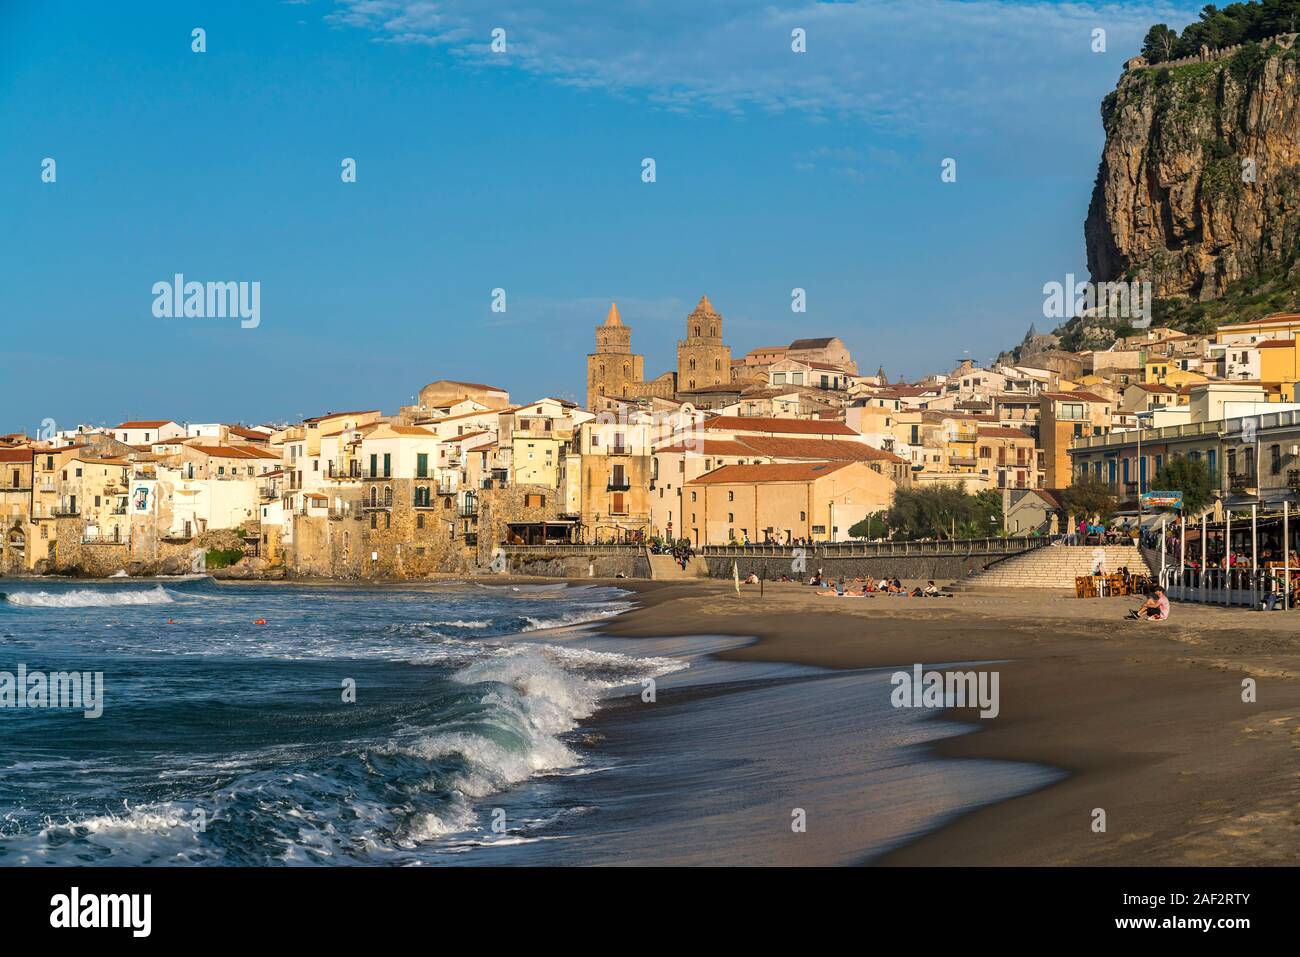 Strand Spiaggia Lungomare und die Altstadt mit der Kathedrale von Cefalu, Sizilien, Italien, Europa | Spiaggia Lungomare Strand und dem historischen Cent Stockfoto